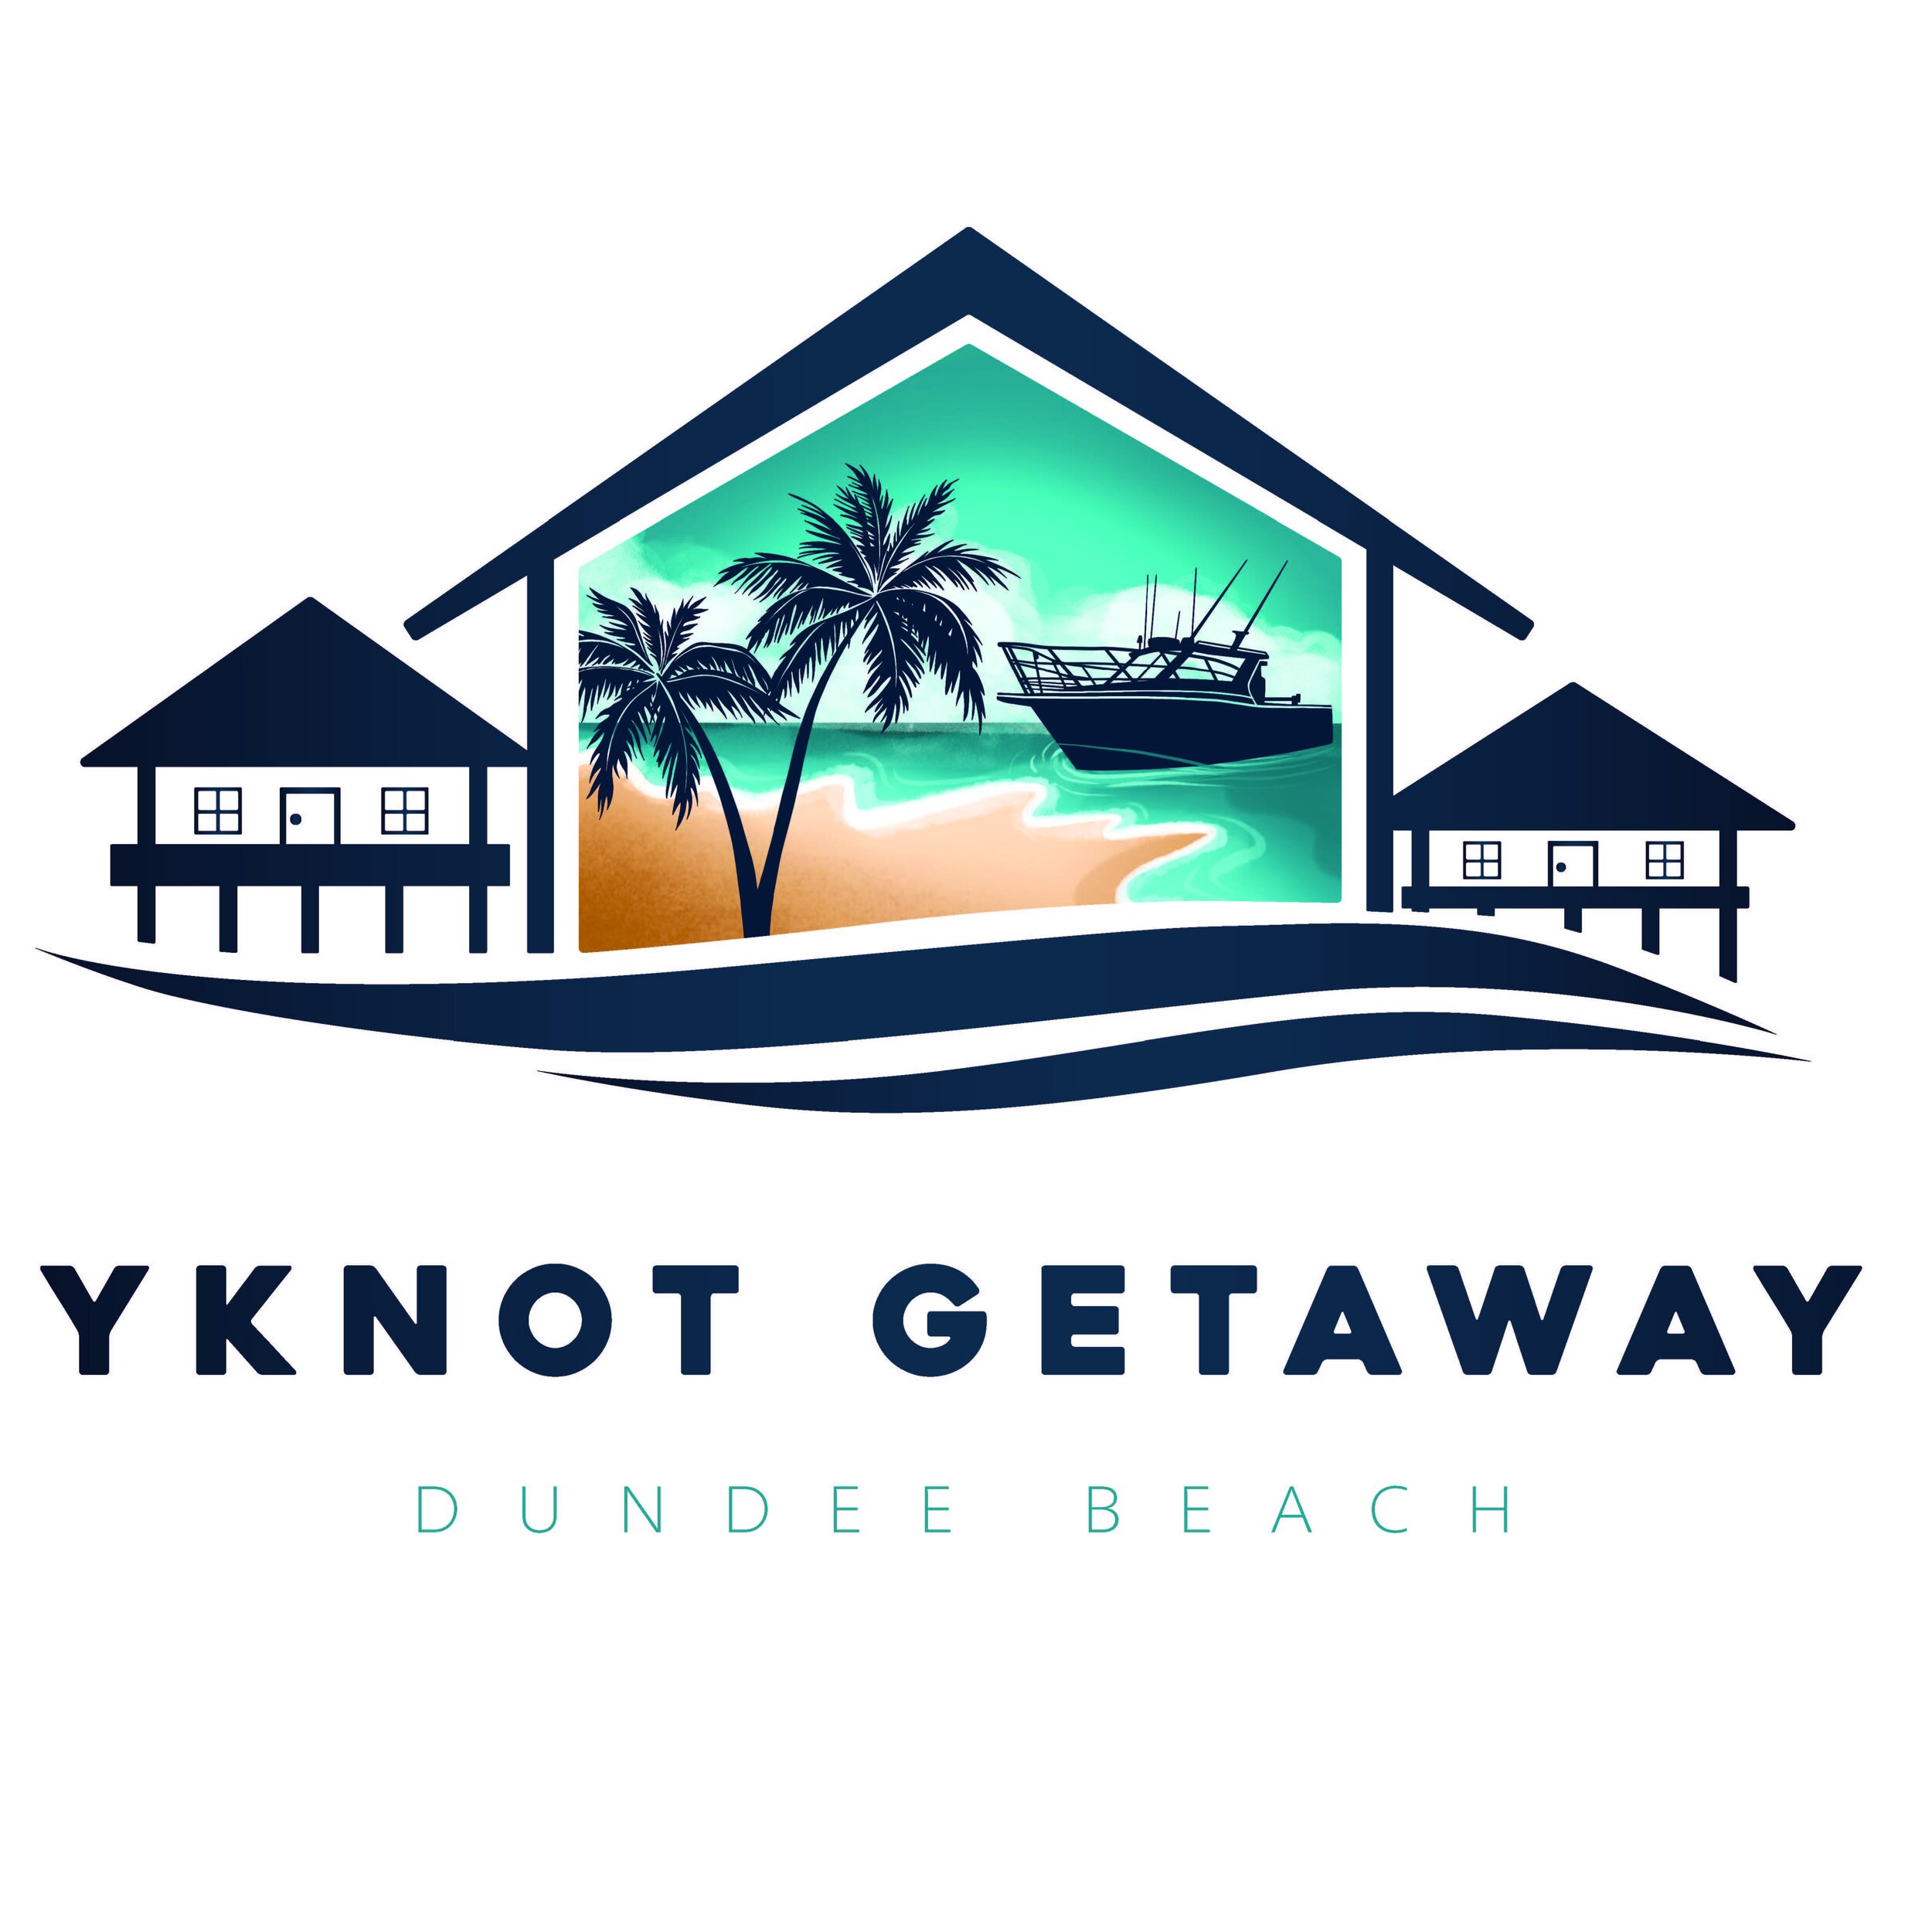 YNOT Getaway Dundee